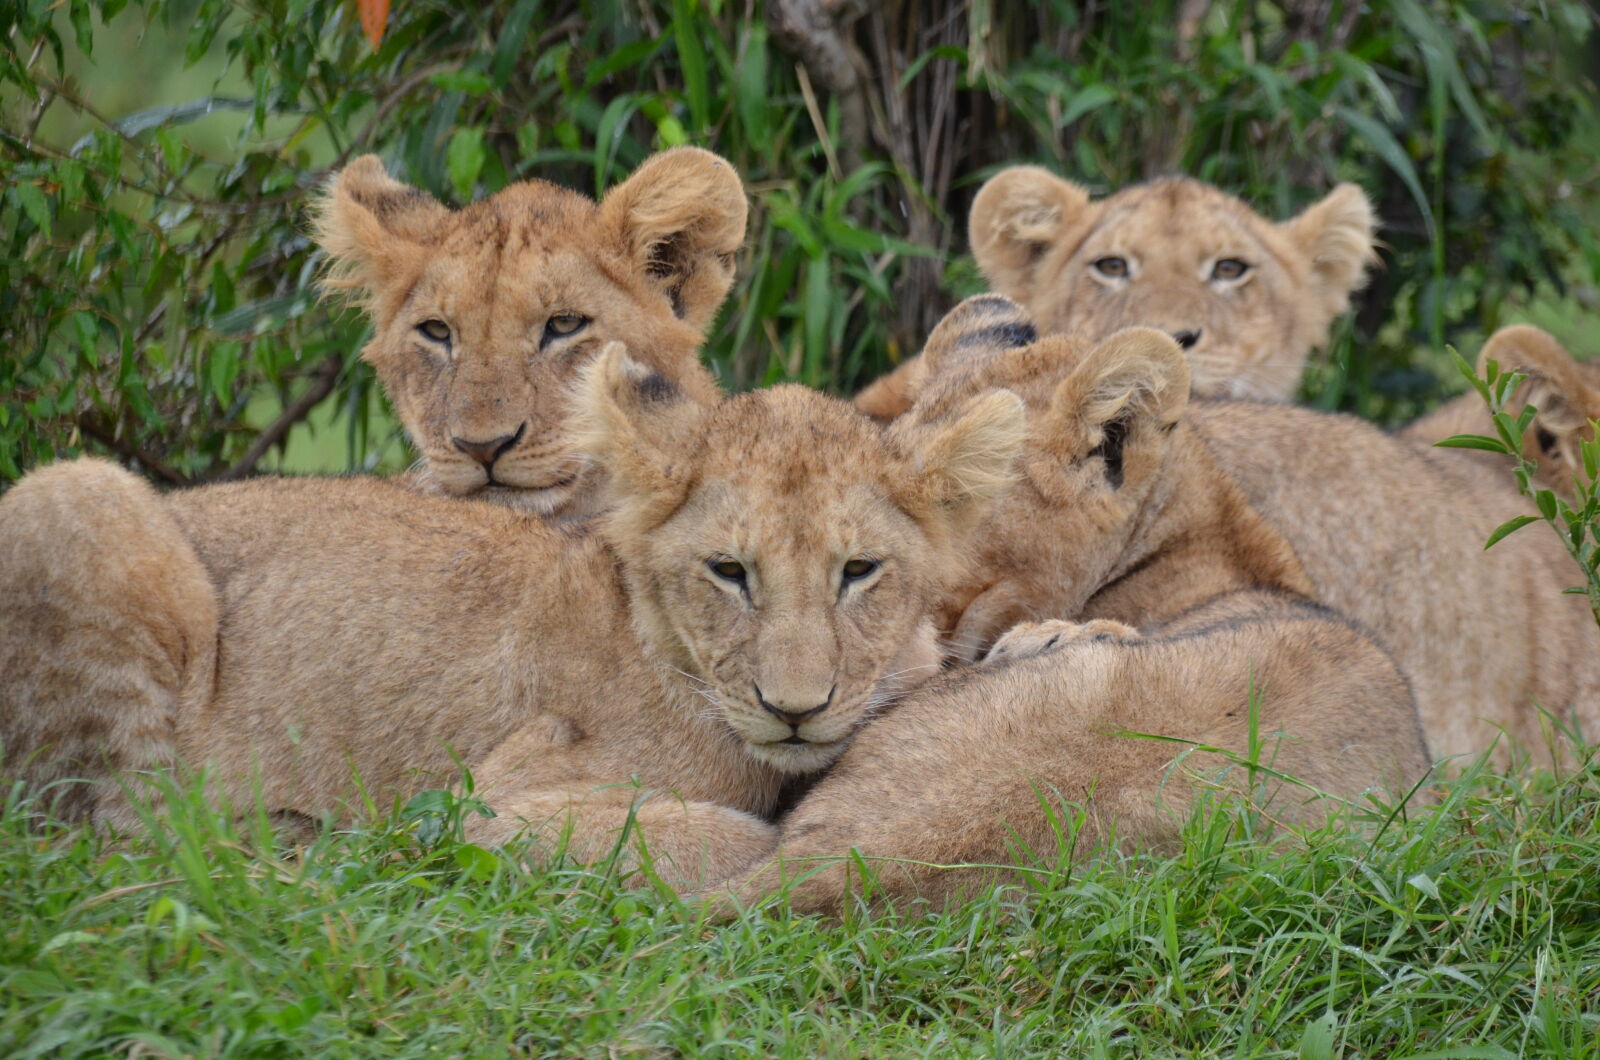 Nikon D5100 + Sigma 18-200mm F3.5-6.3 DC OS HSM sample photo. Africa, kenya, lion, cubs photography